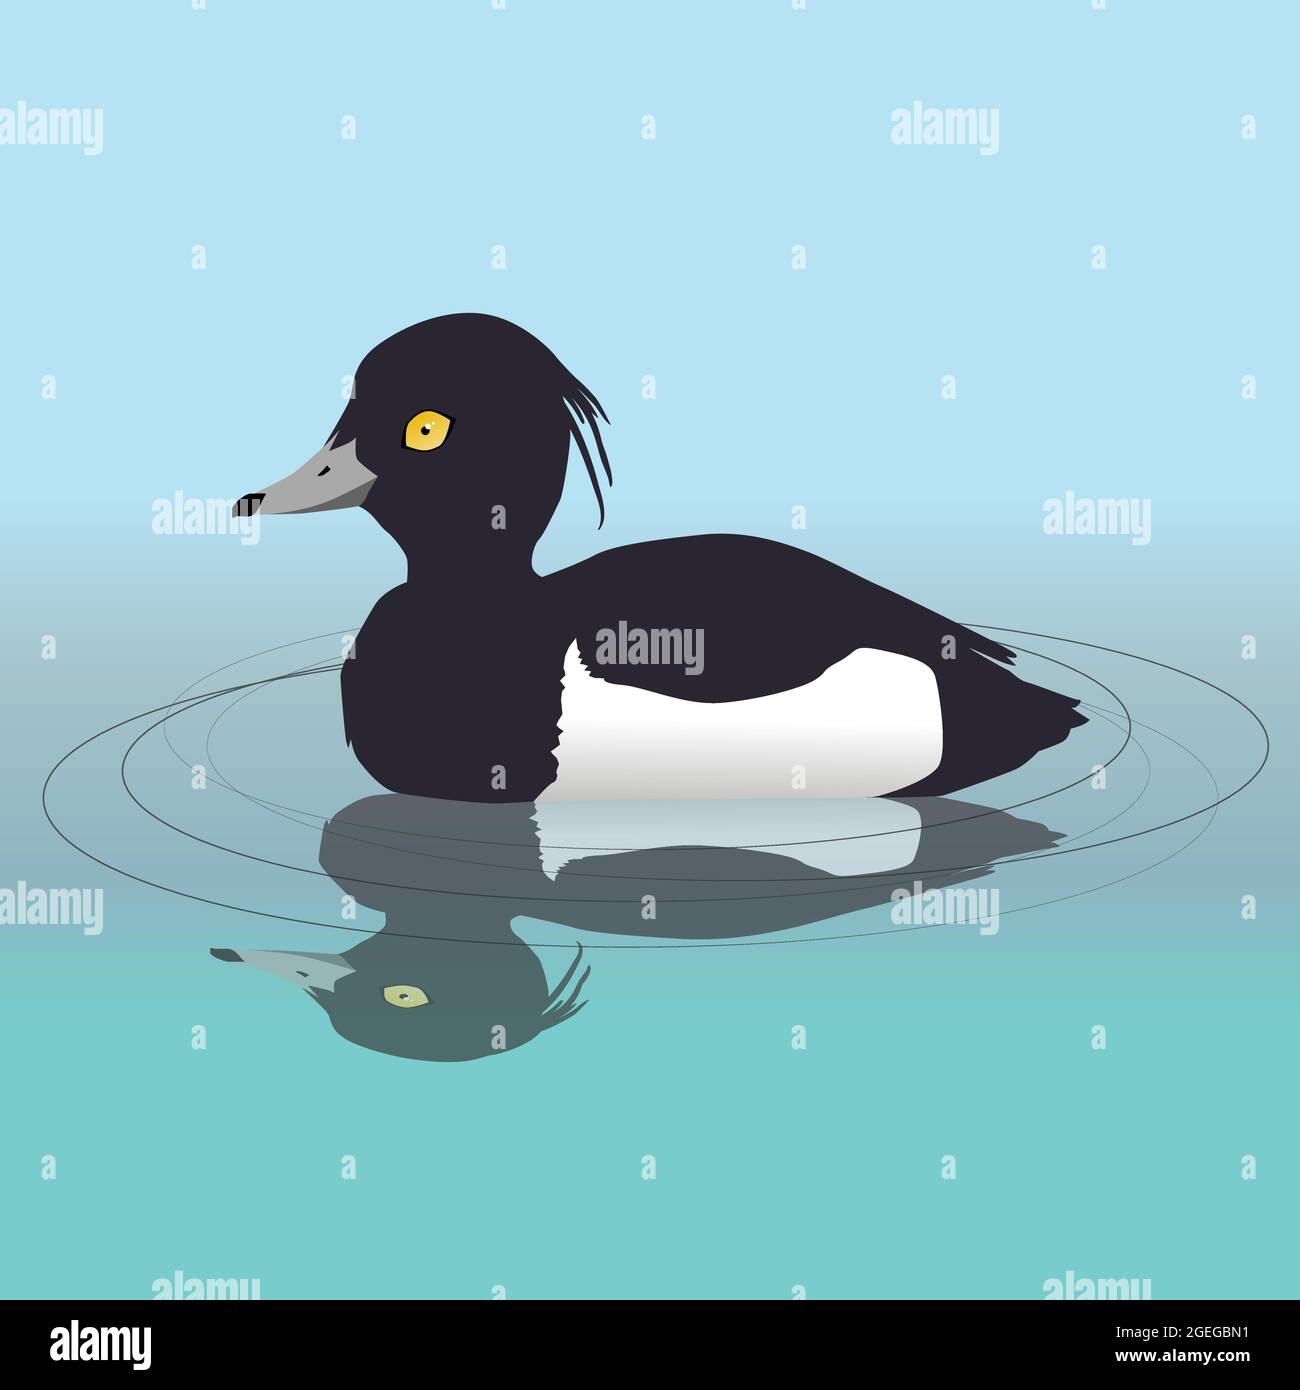 Illustration vectorielle d'un canard touffeté mâle nageant dans l'eau. Sa réflexion est visible dans l'eau. Illustration de Vecteur